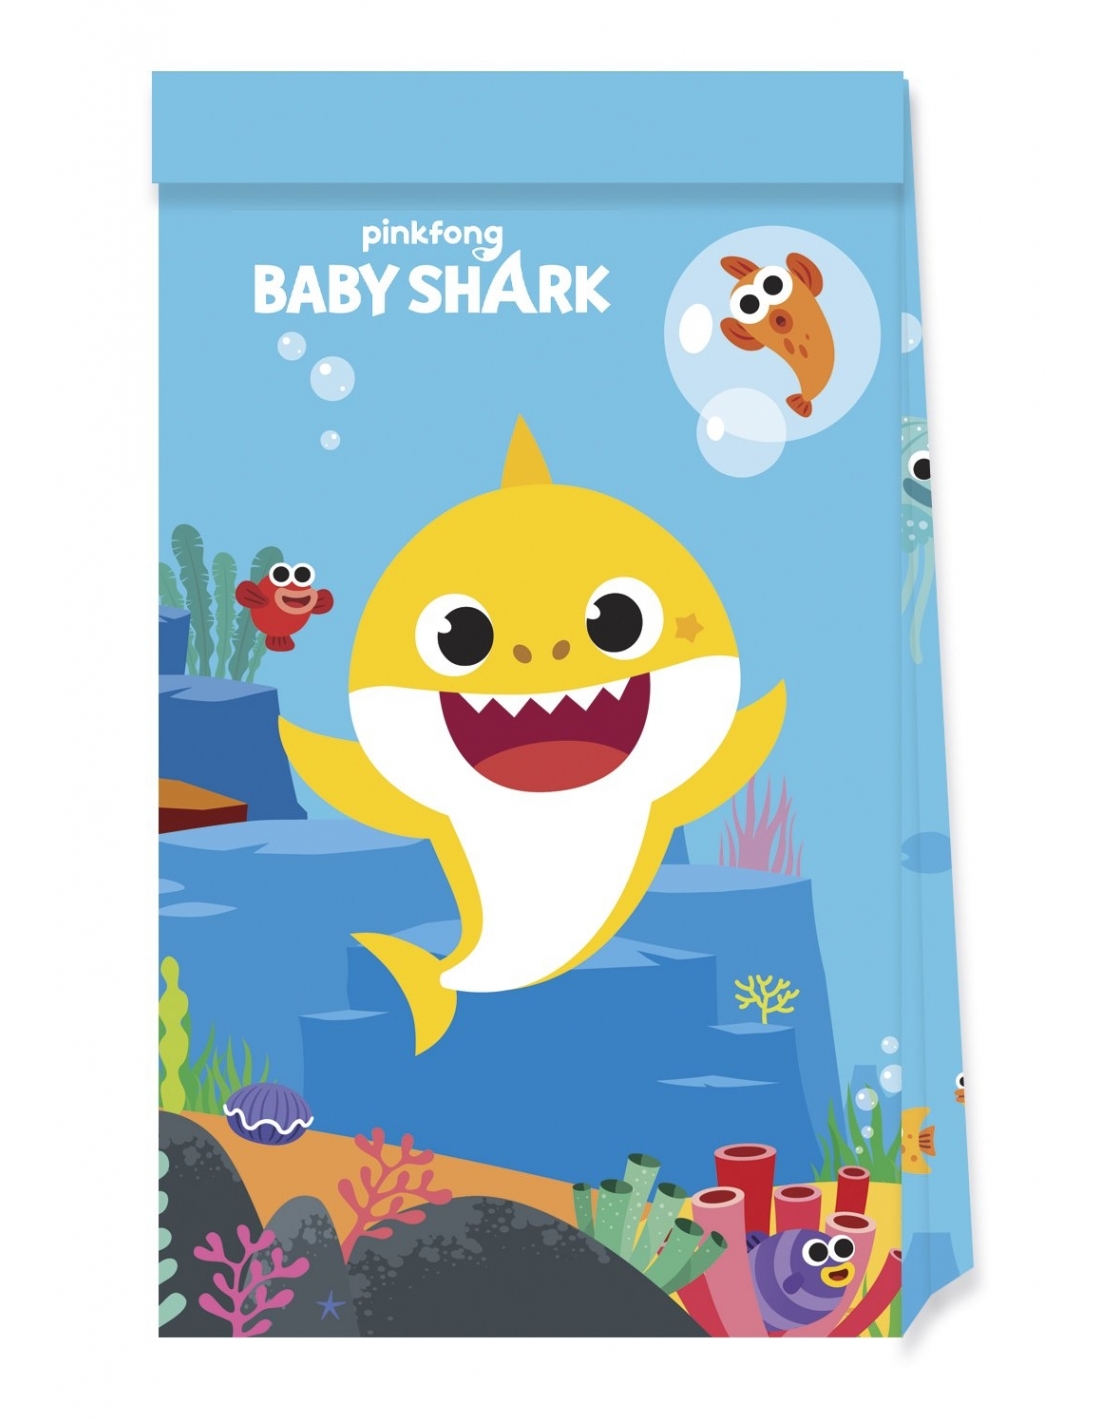 Feliz cumpleaños con Baby Shark - Baby Shark - Dibujos para